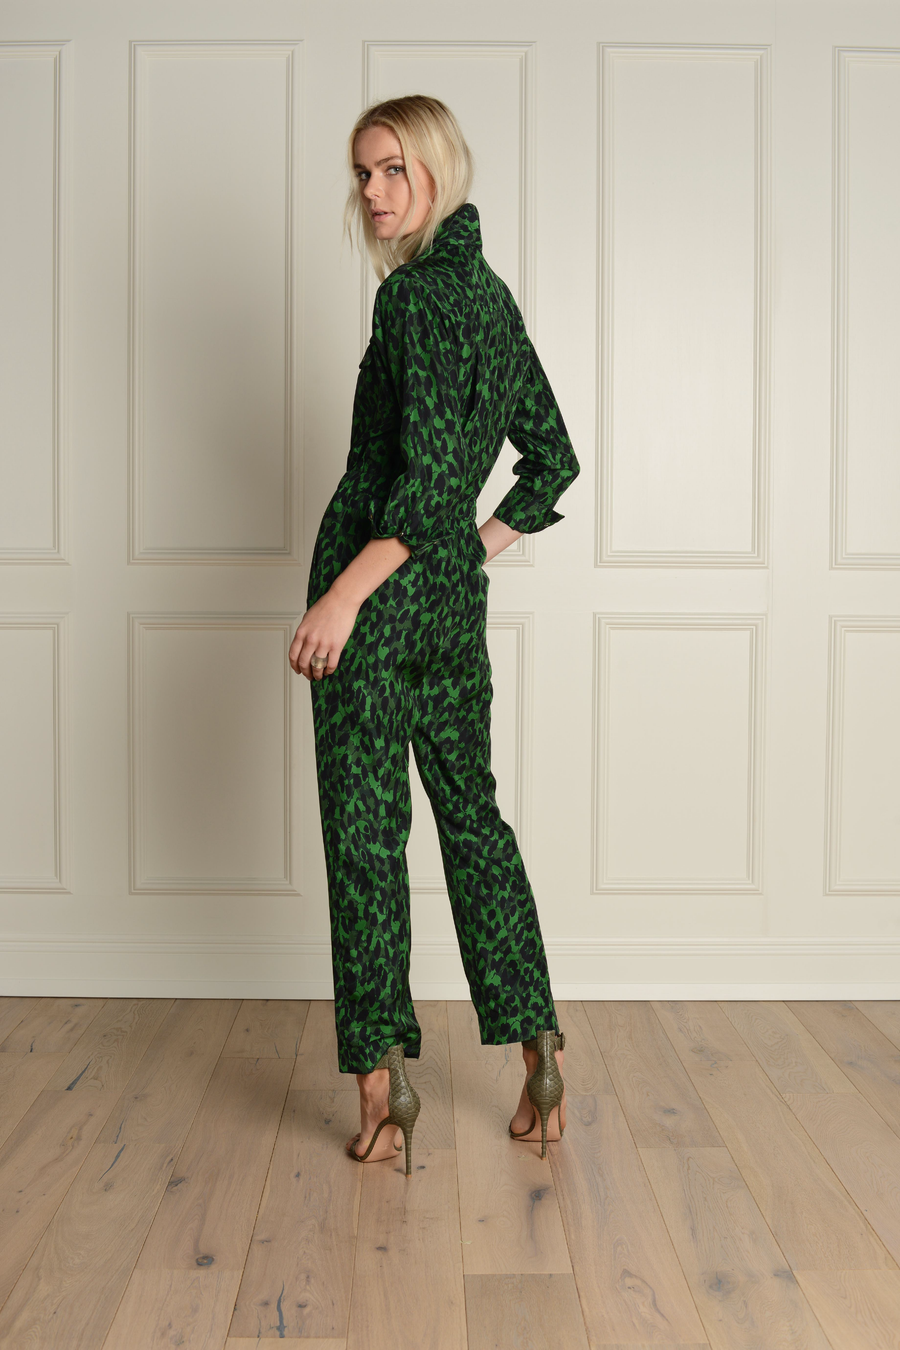 Flightsuit Long Sleeve : Emerald Green Leopard